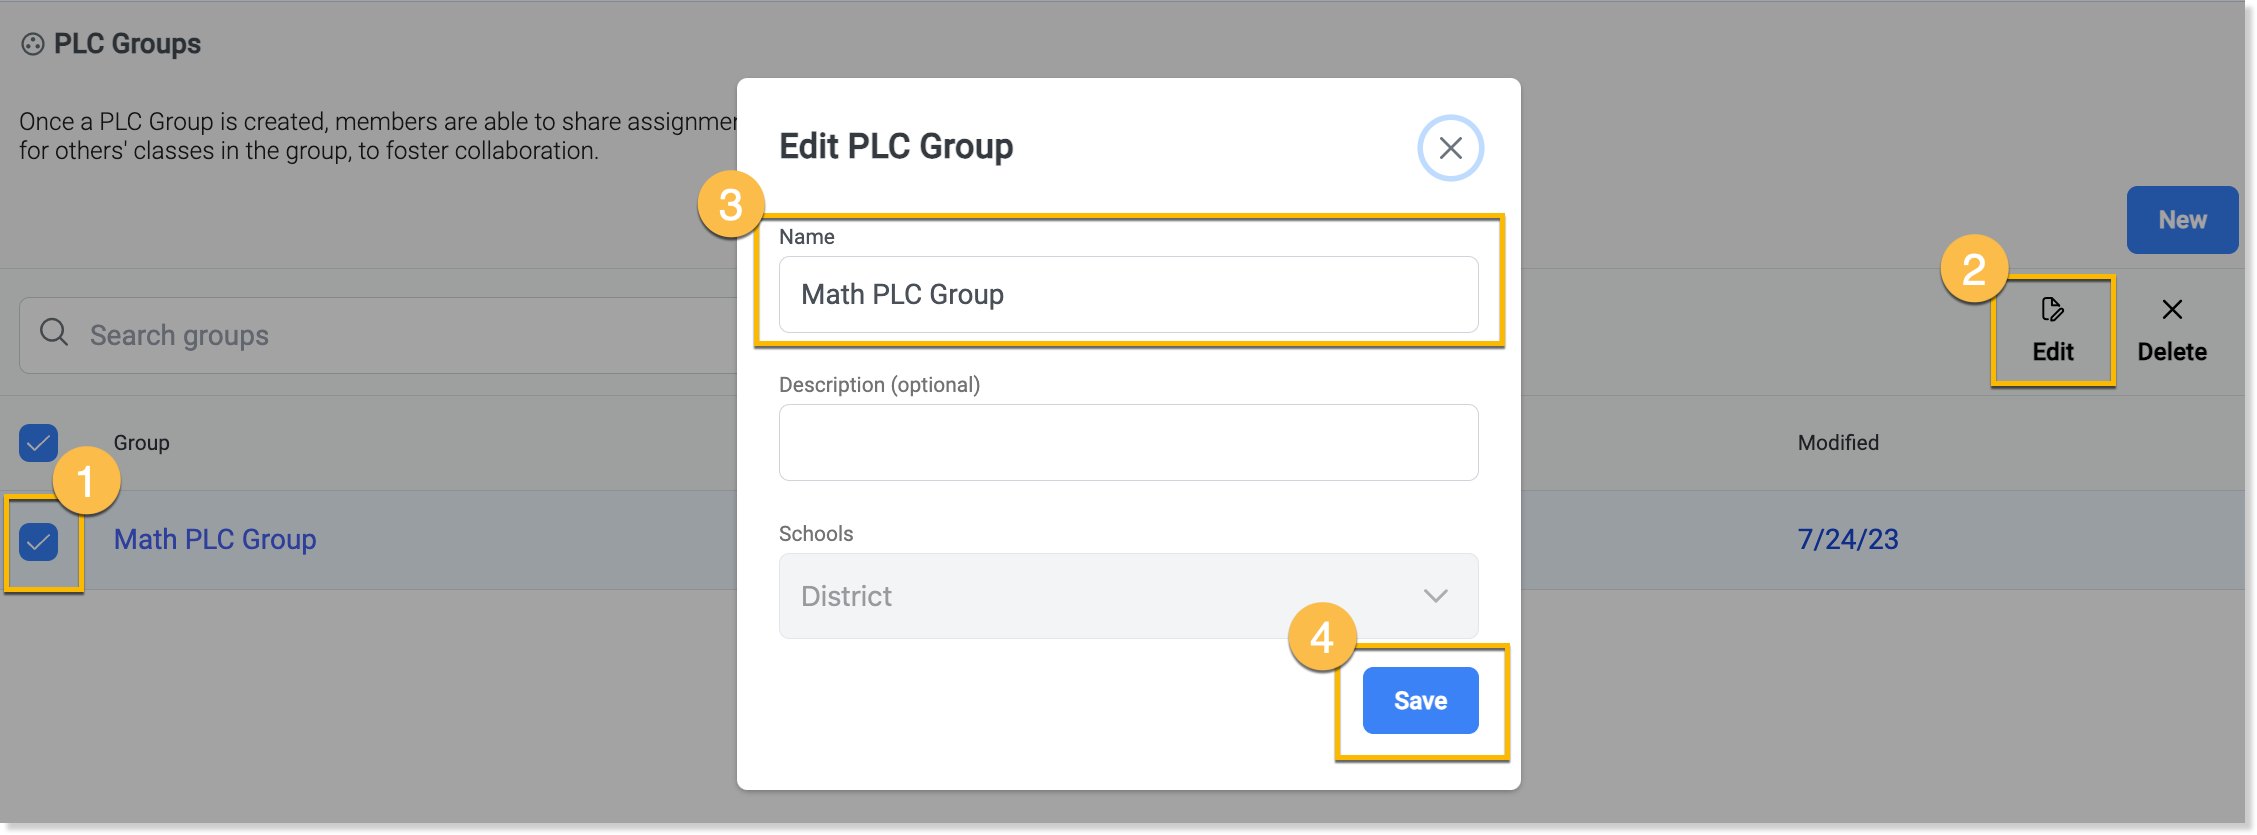 Edit PLC Group.png